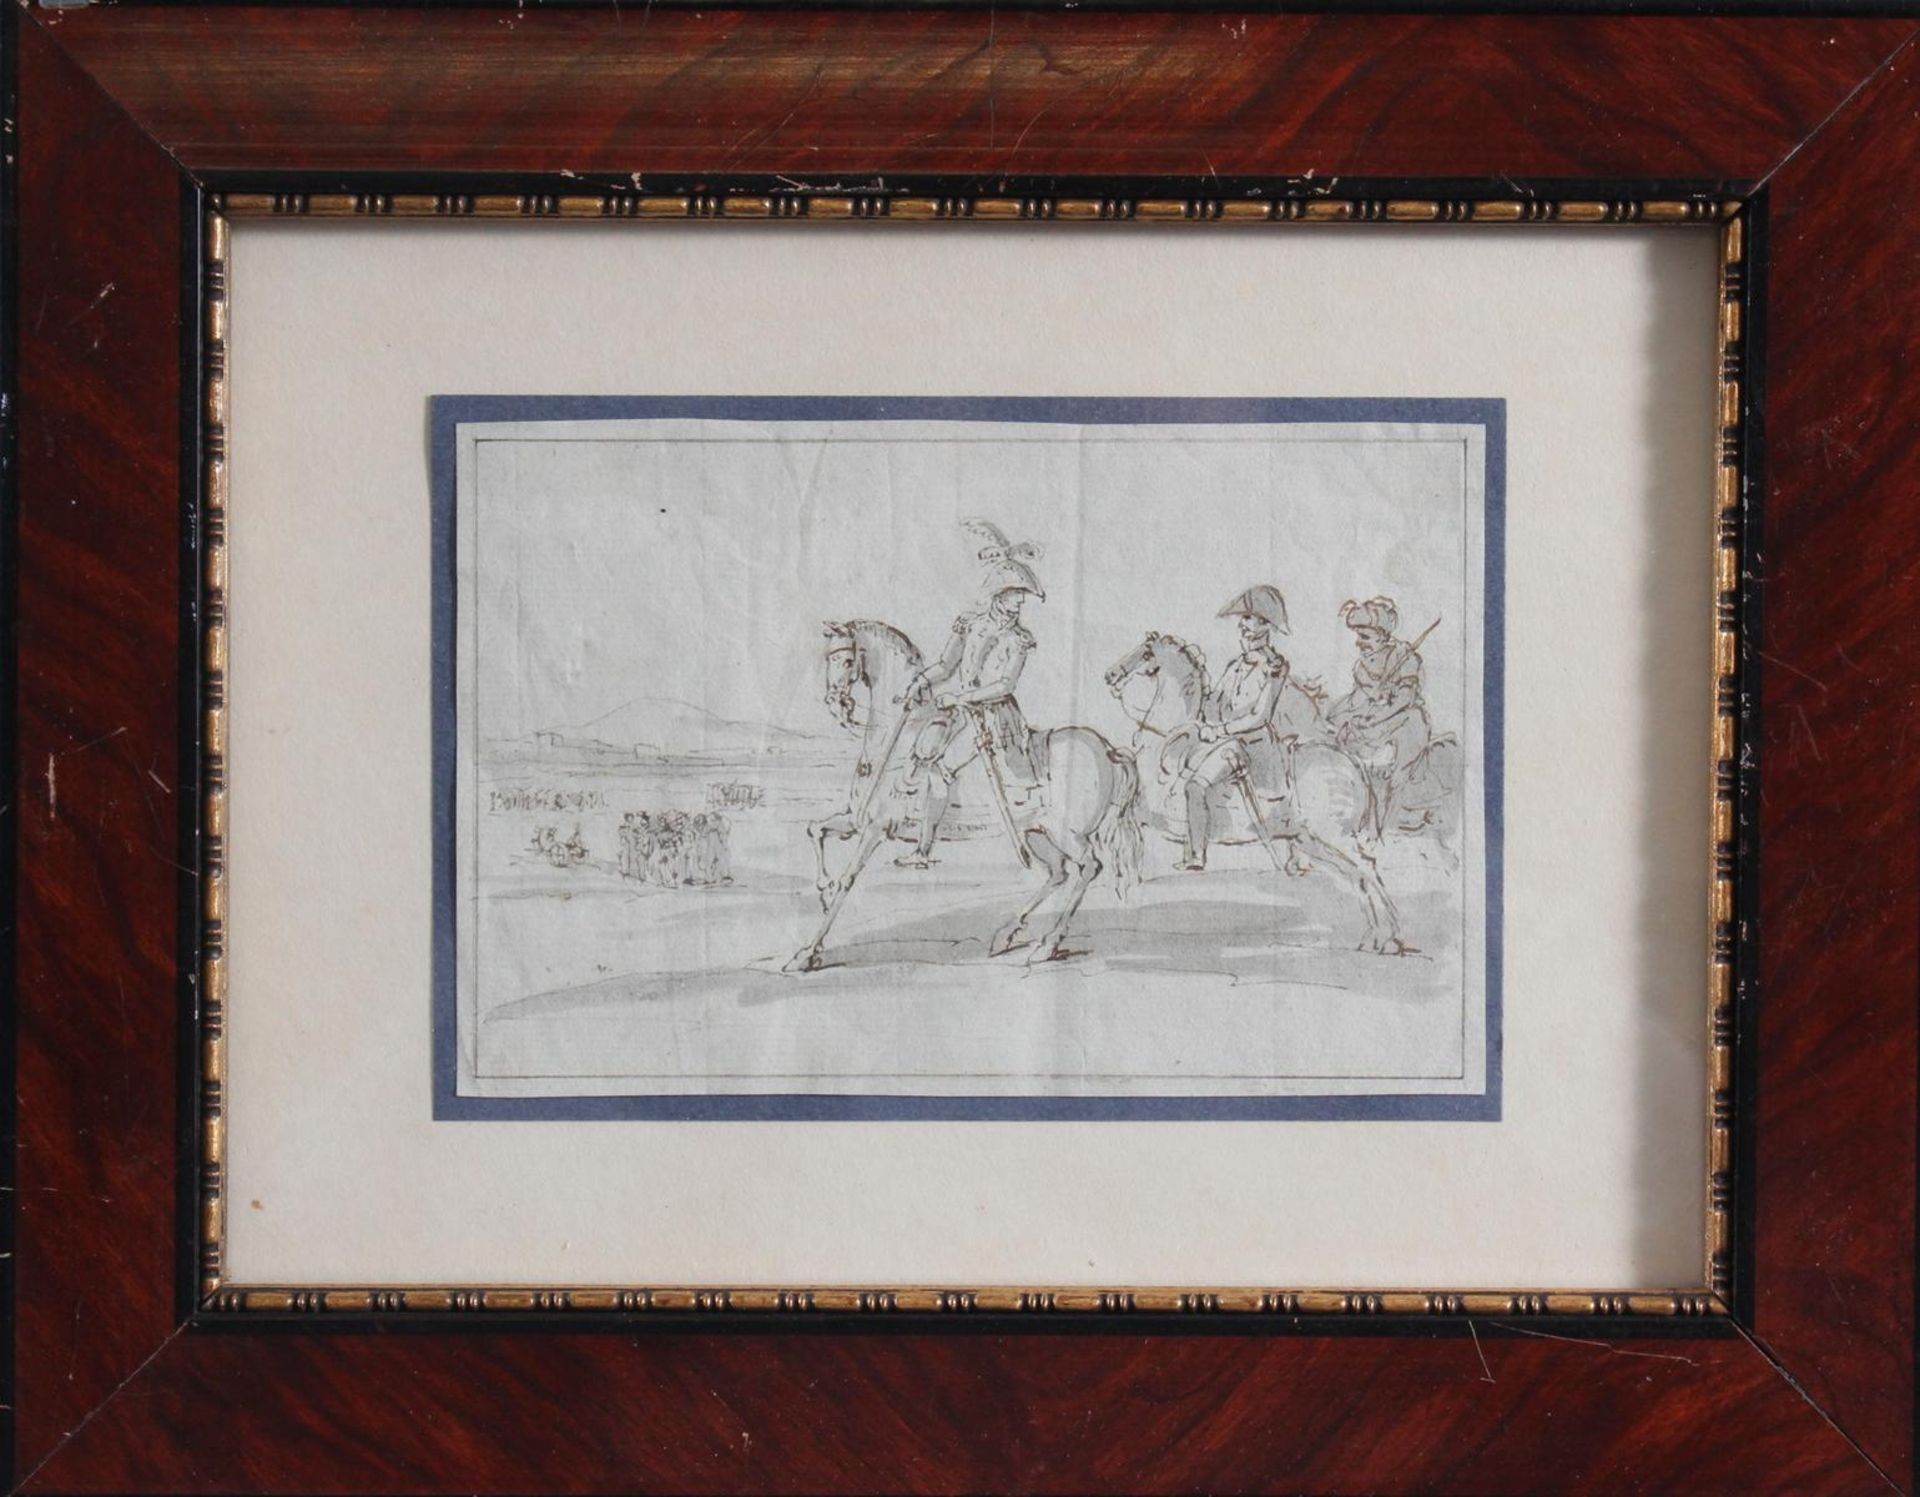 Federzeichnung des 19. Jahrhunderts. "Marschall Joachim Murat"Federzeichnung in schwarz, teils